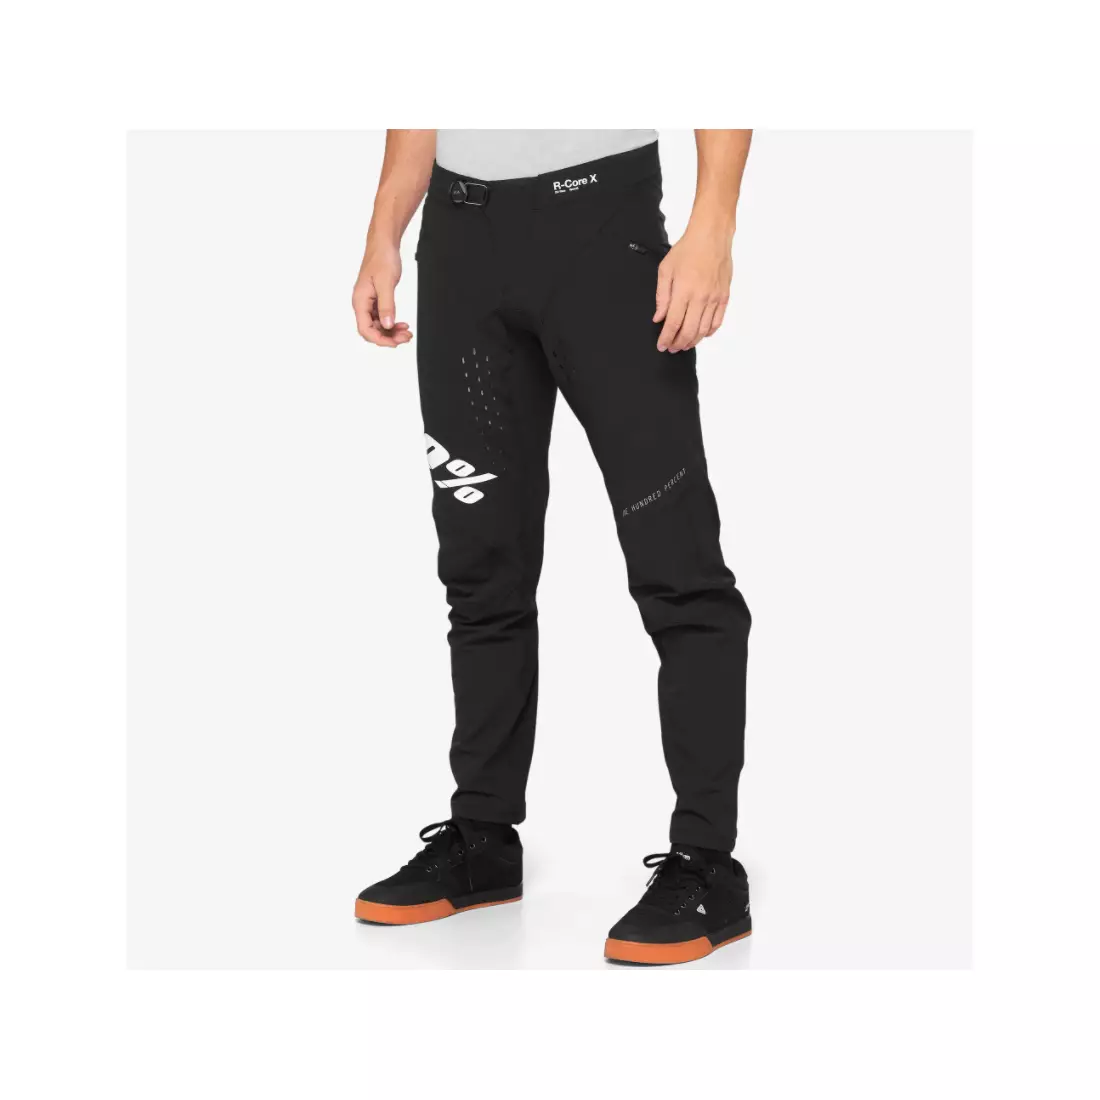 100% men's cycling pants R-CORE X black white 